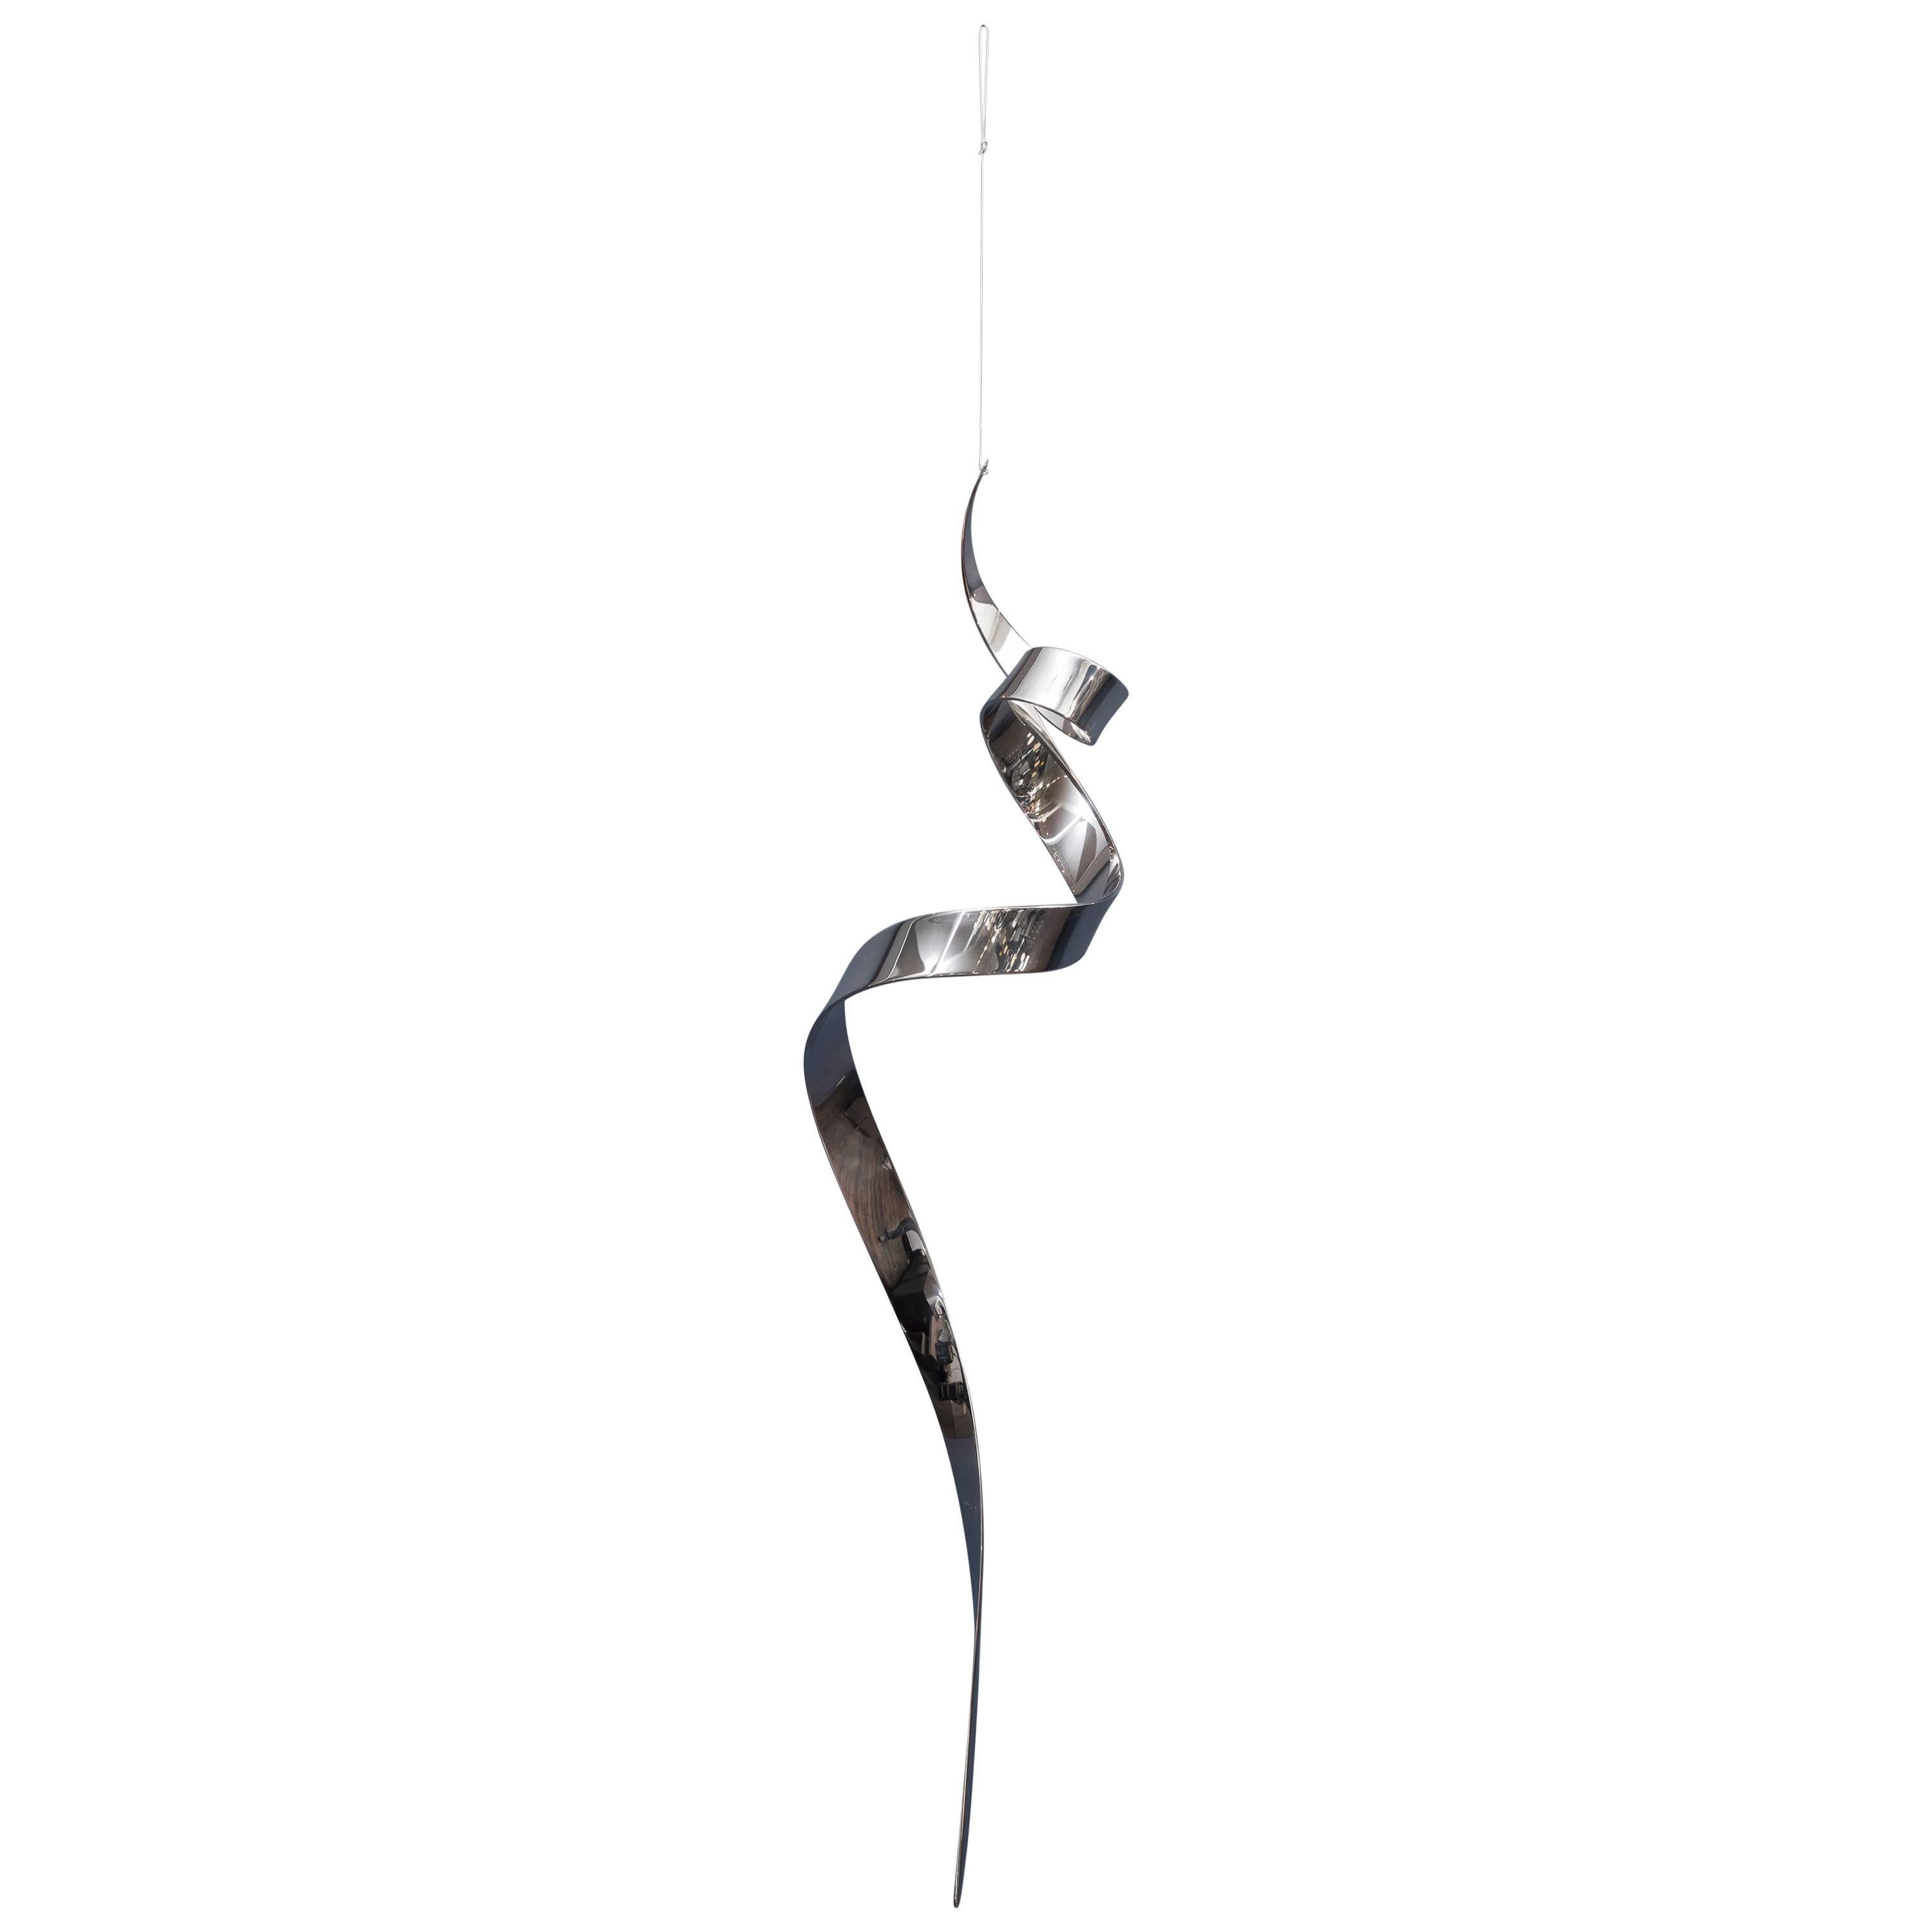 David Herschler "Moving Ribbons" Hanging Sculpture